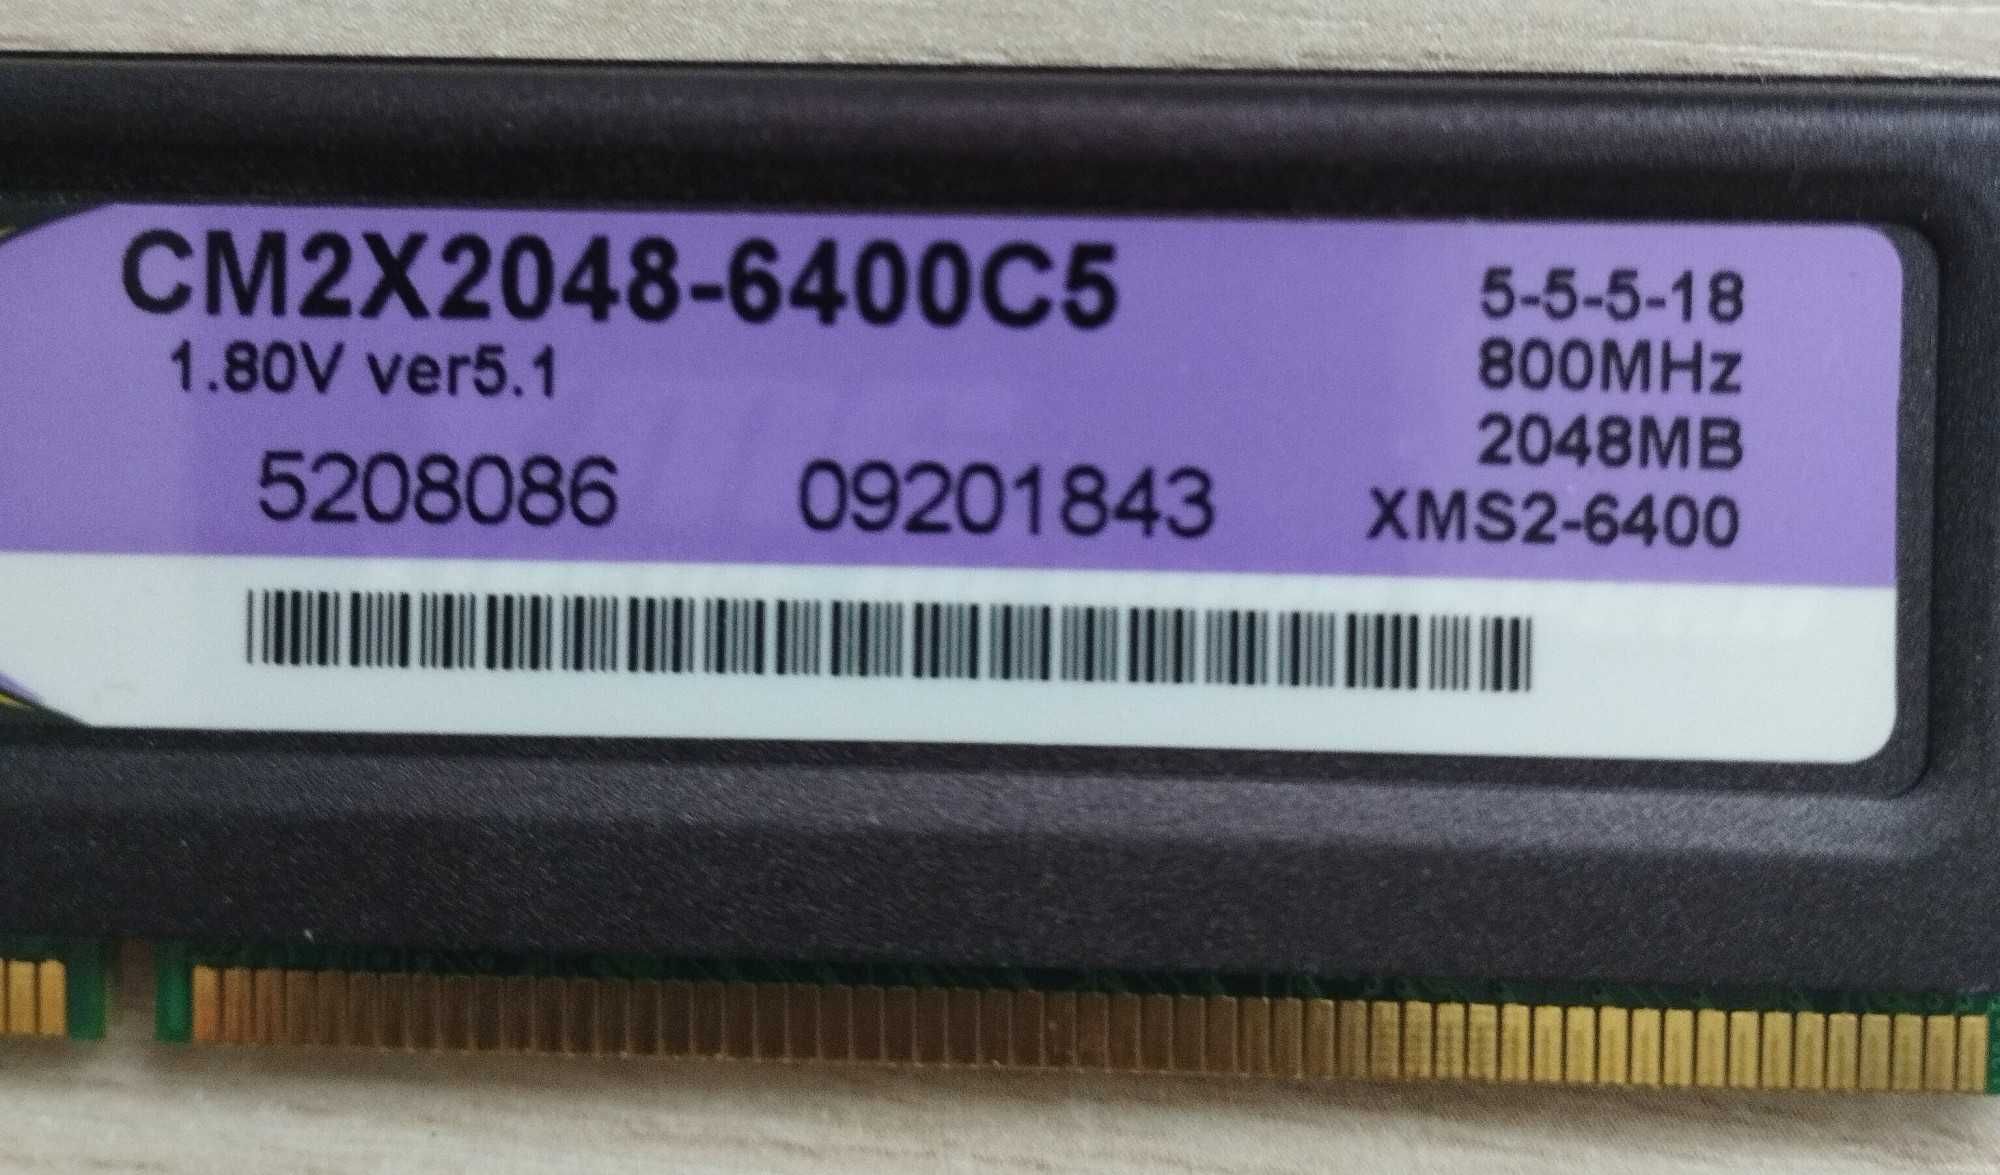 RAM DDR2 CORSAIR XMS2 6400C5 4GB 2 x 2GB 800MHz 5-5-5-18